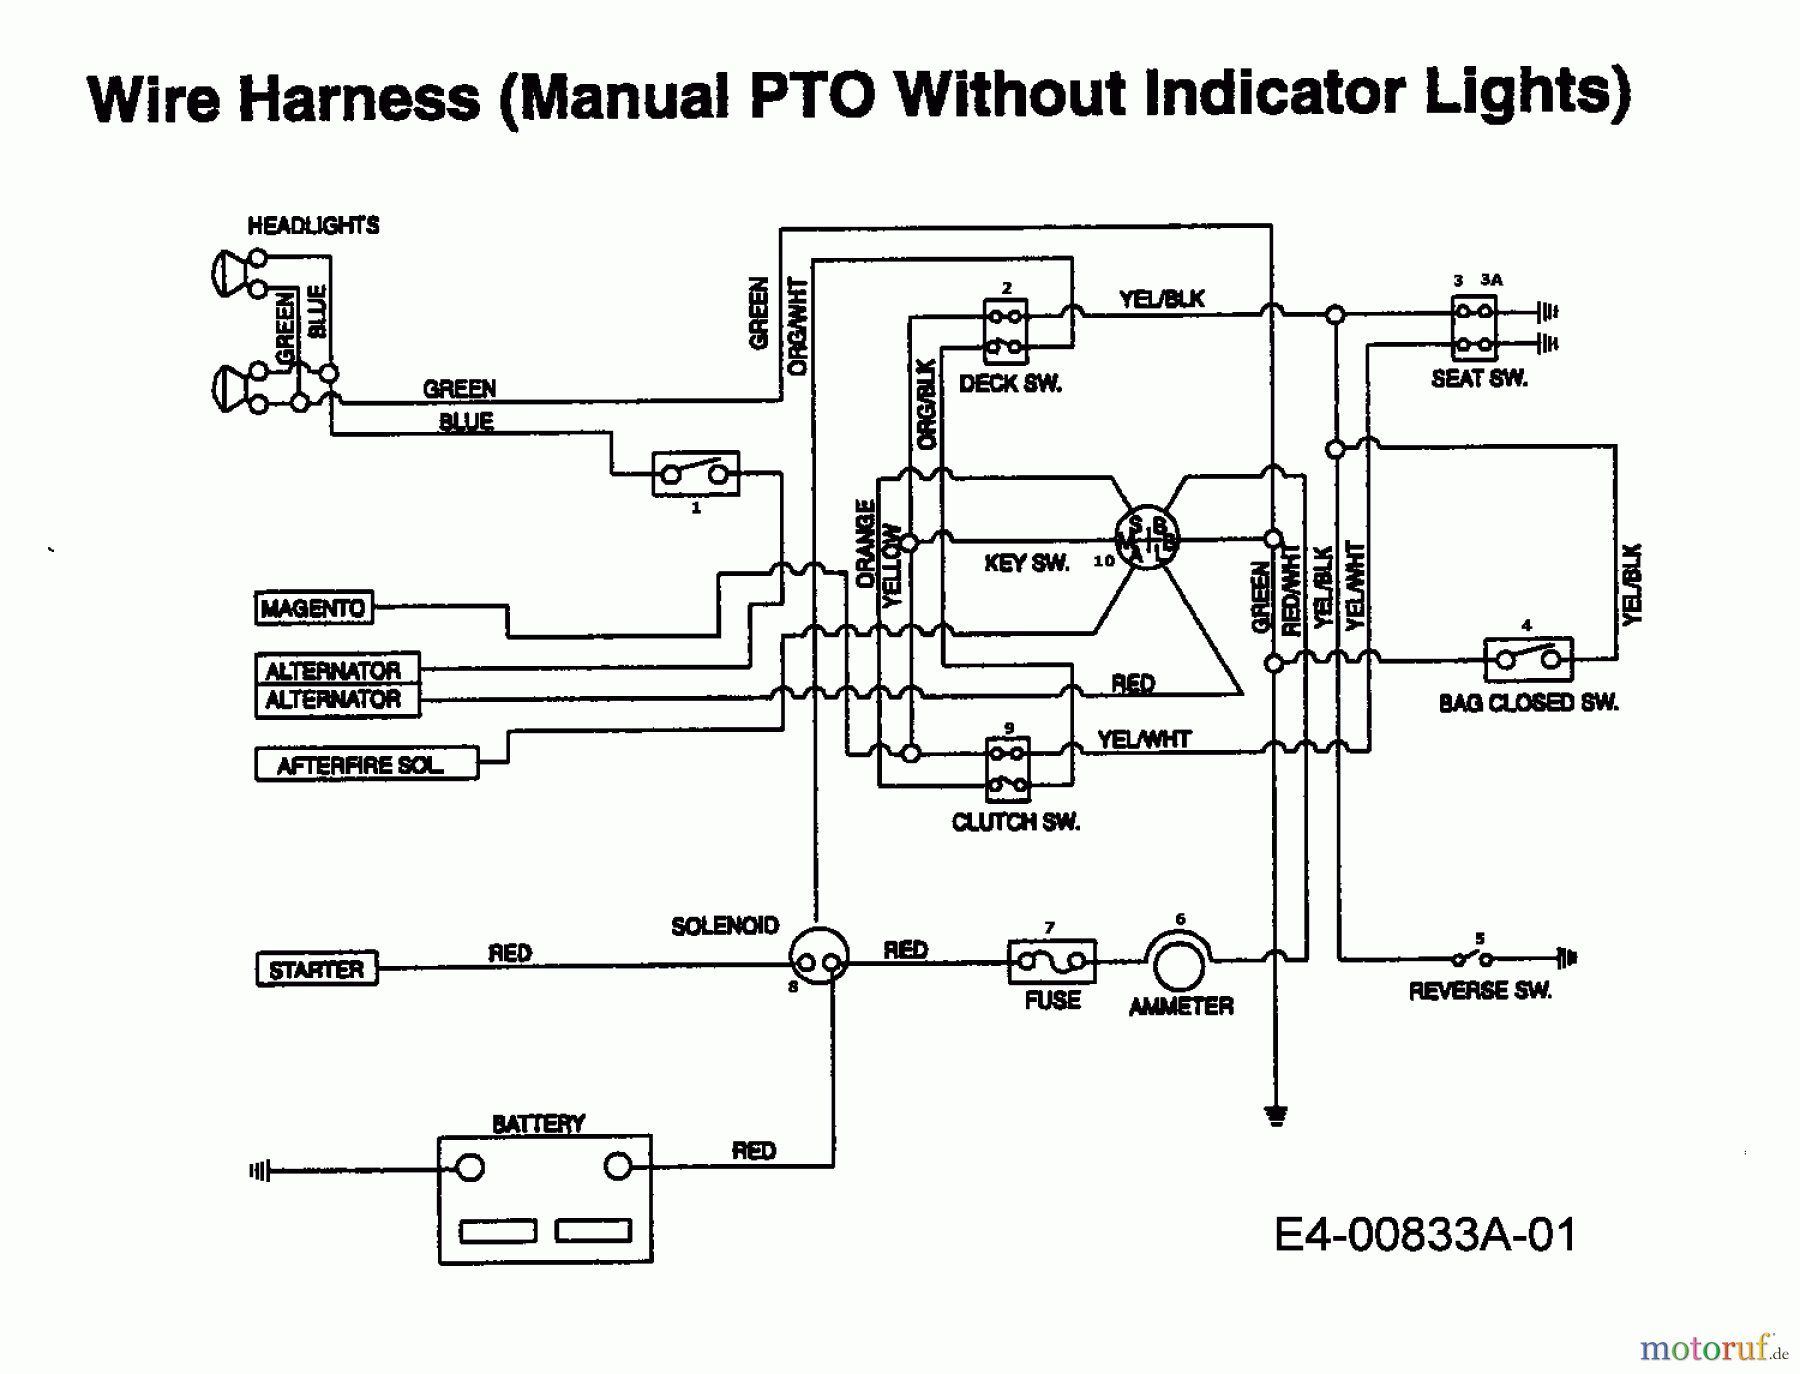  MTD Rasentraktoren EH/130 13AA795N678  (1997) Schaltplan ohne Kontrolleuchten